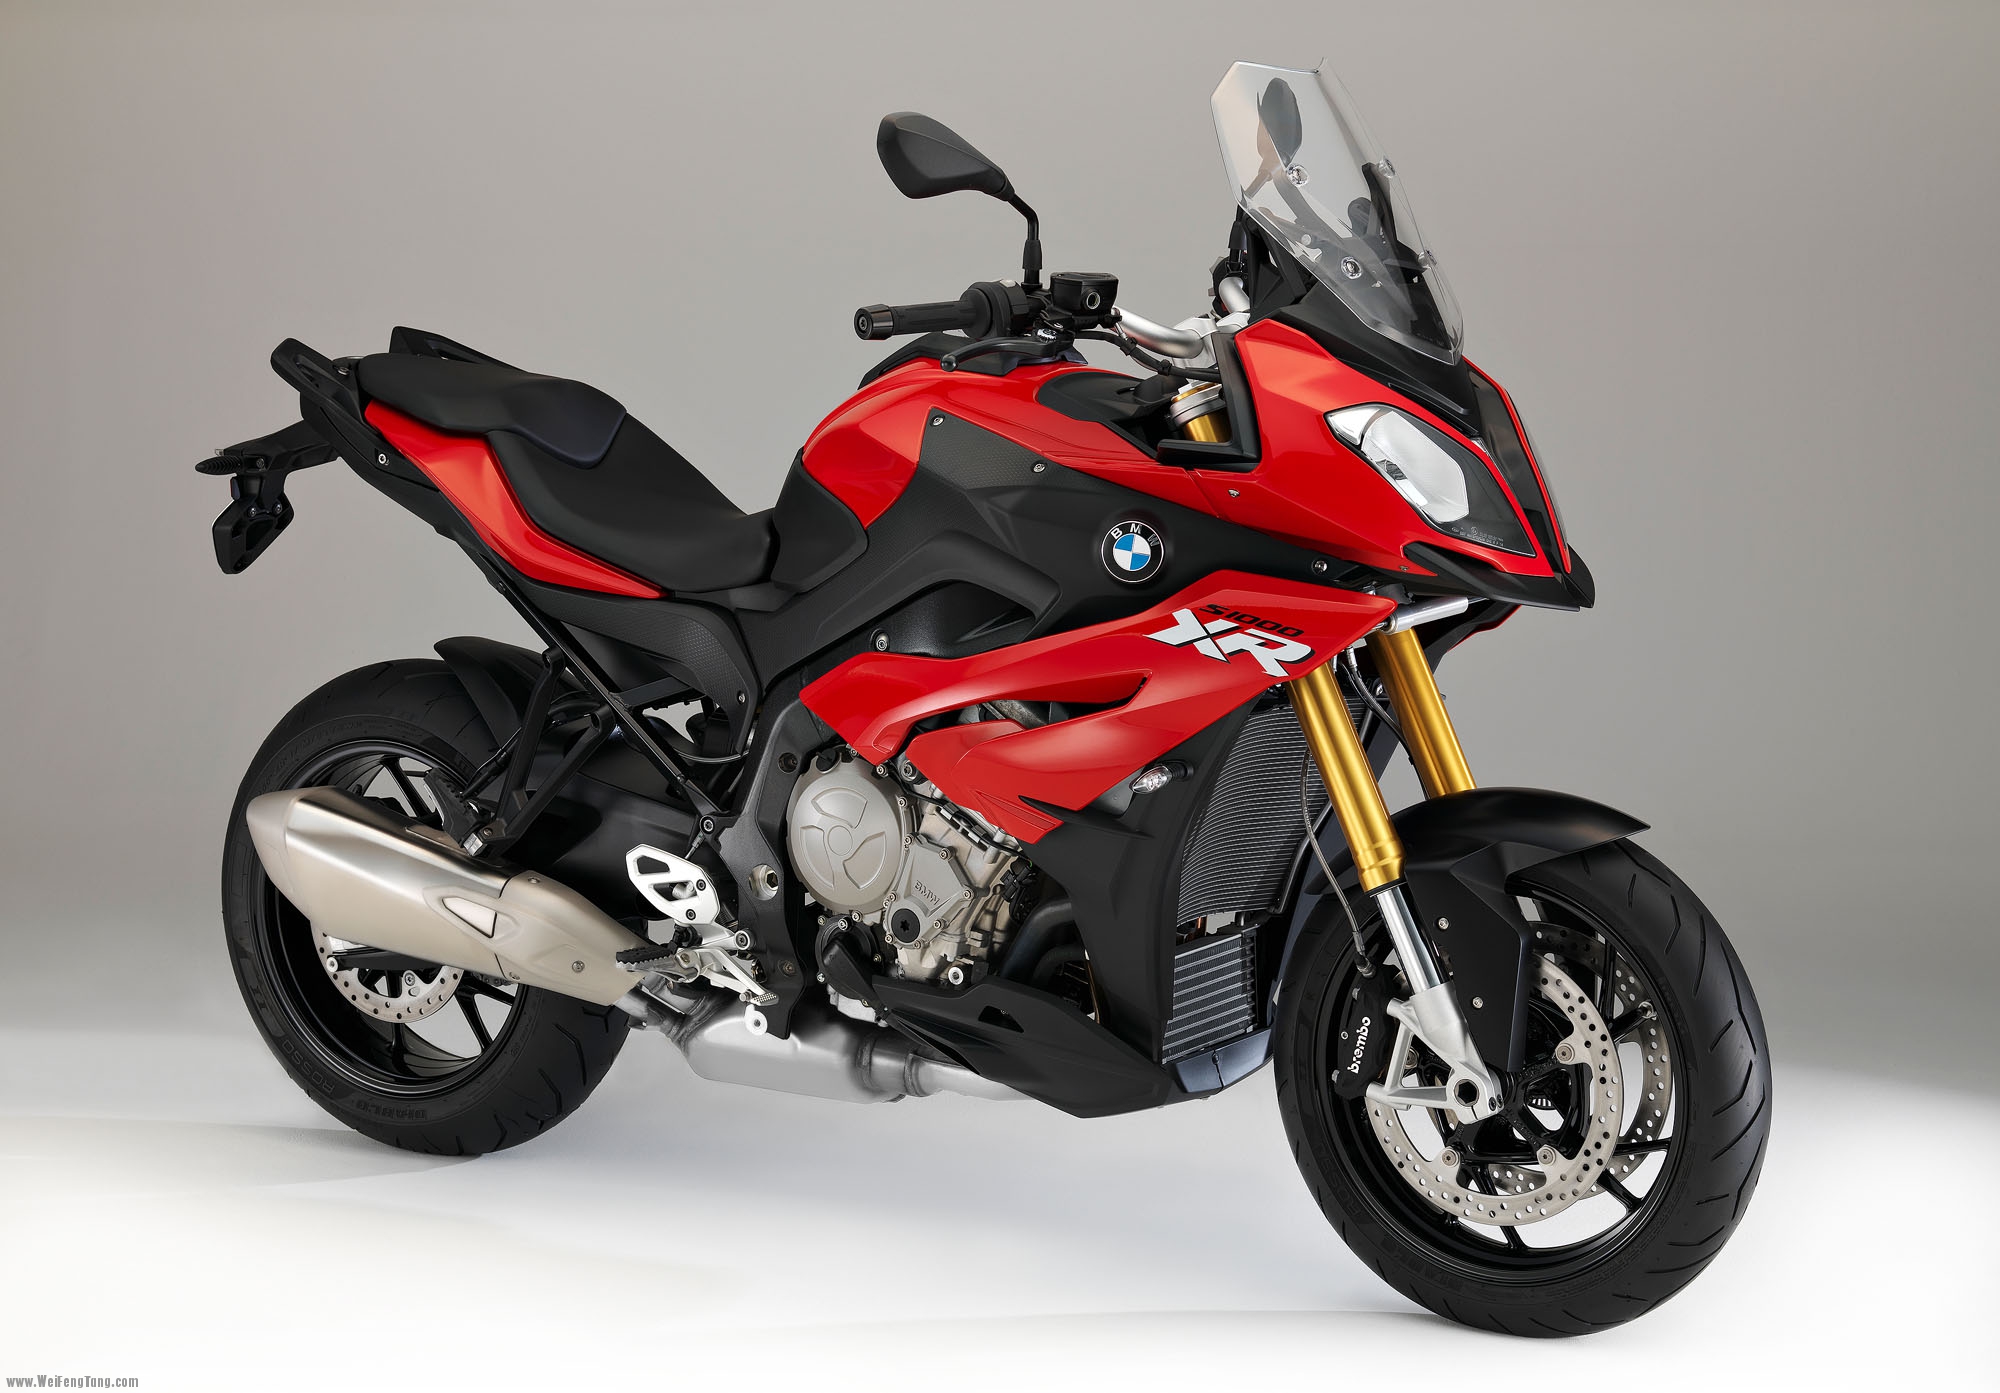 宝马 2015款S1000XR 摩托车量产版本开始扑向市场